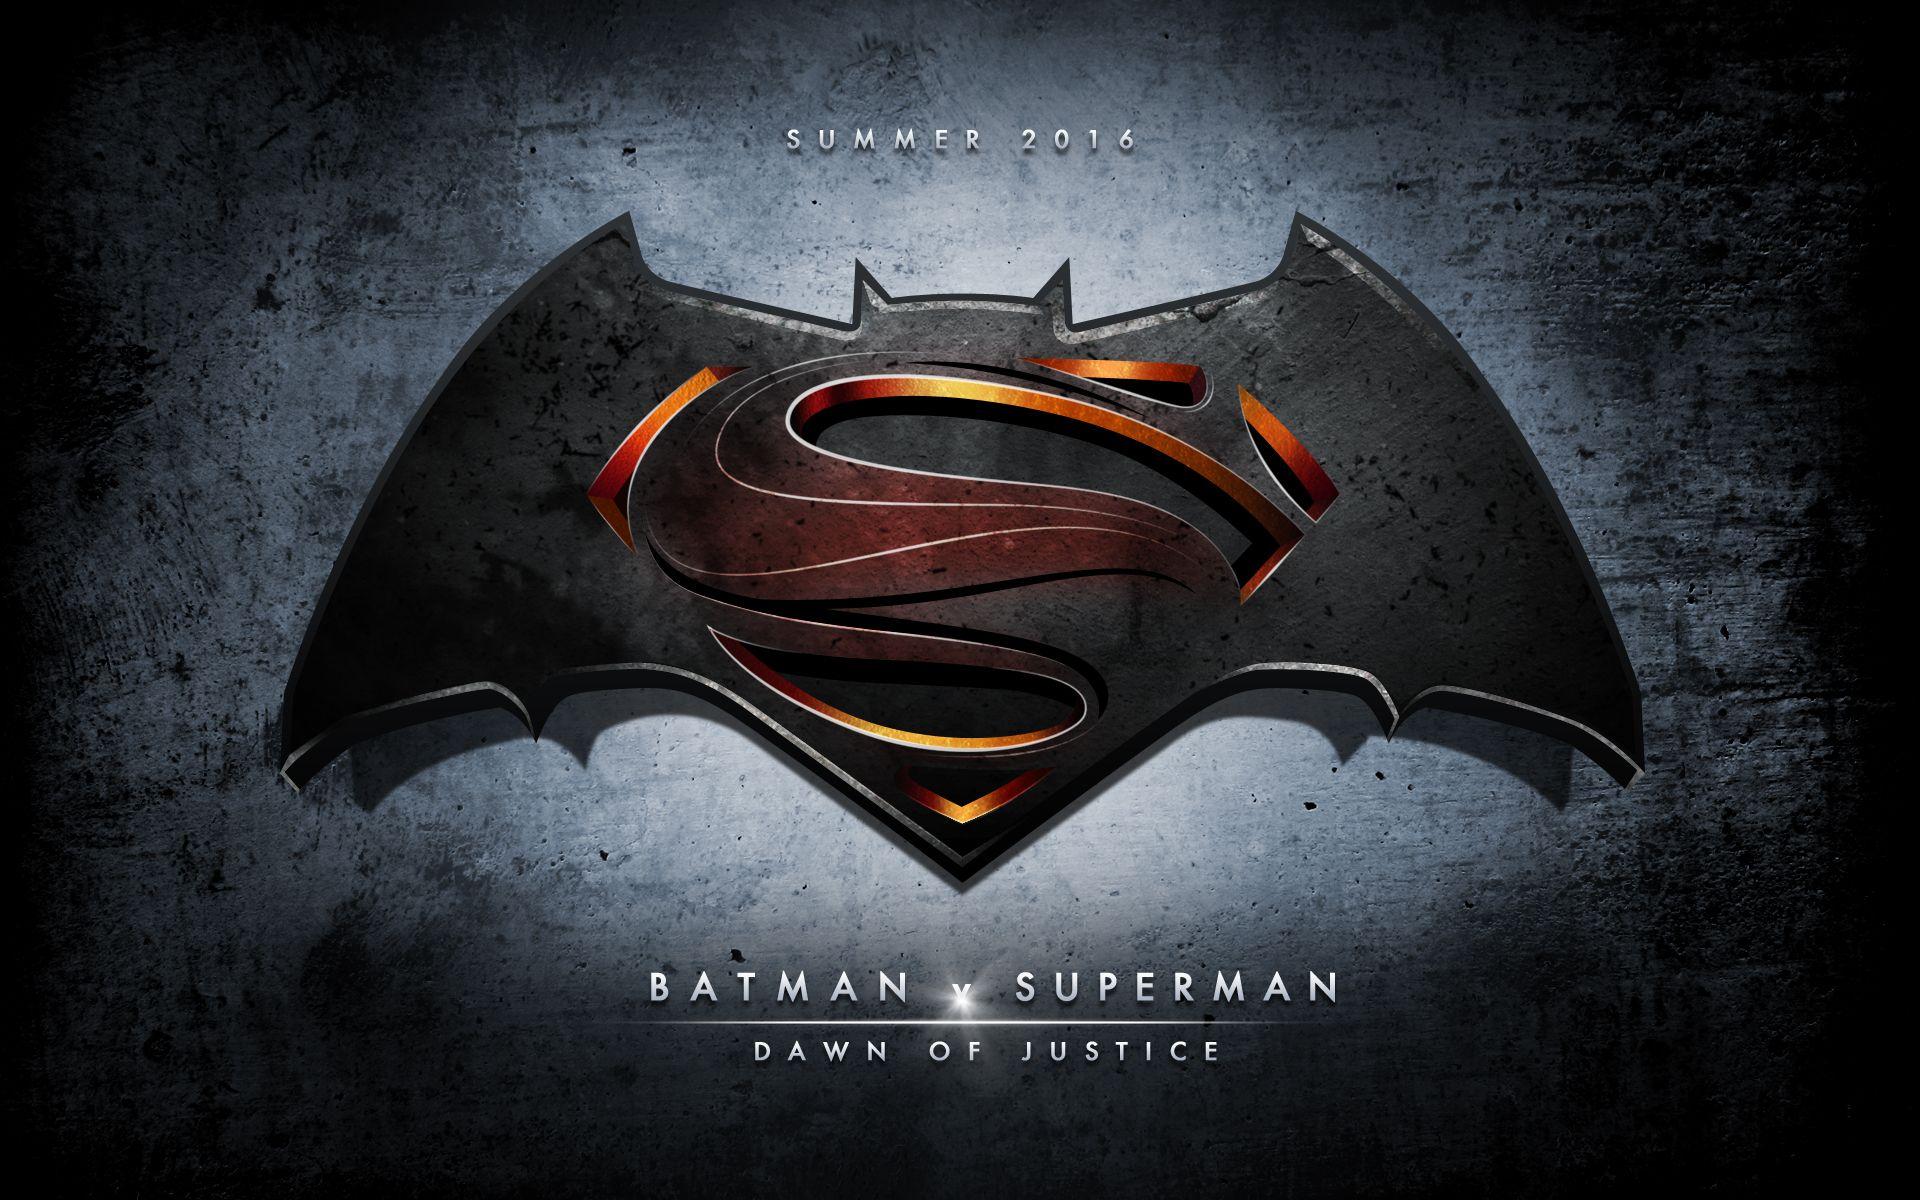 Batman vs Superman New Logo - Warner Brothers Unveils New Batman v Superman: Dawn of Justice ...